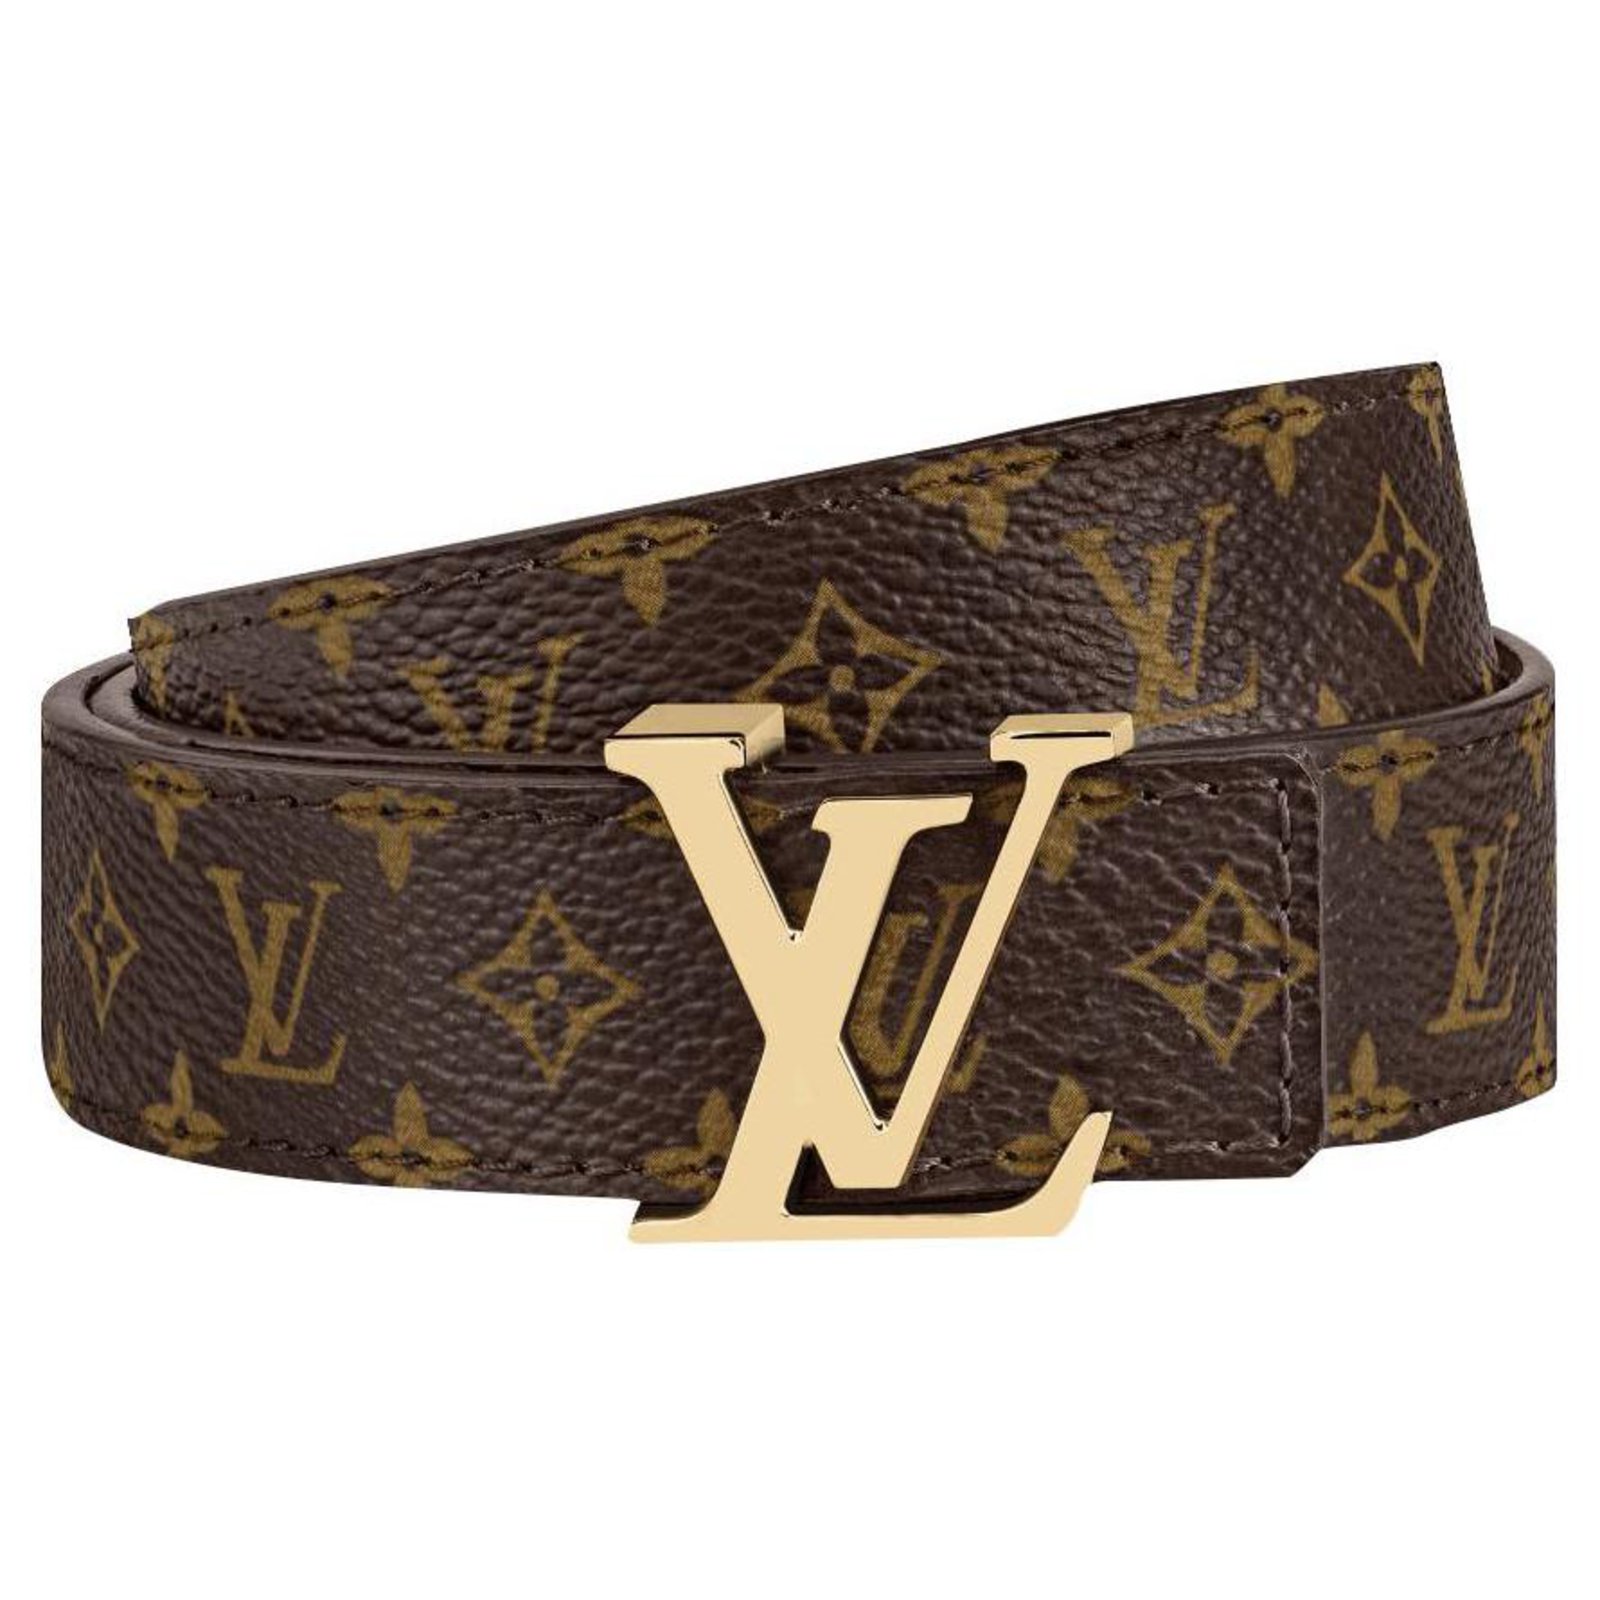 Cinturón unisex Louis Vuitton 100% piel 12.33 € (Gtos. de envío incluidos)  en lugar de 470 € - I-Chollos